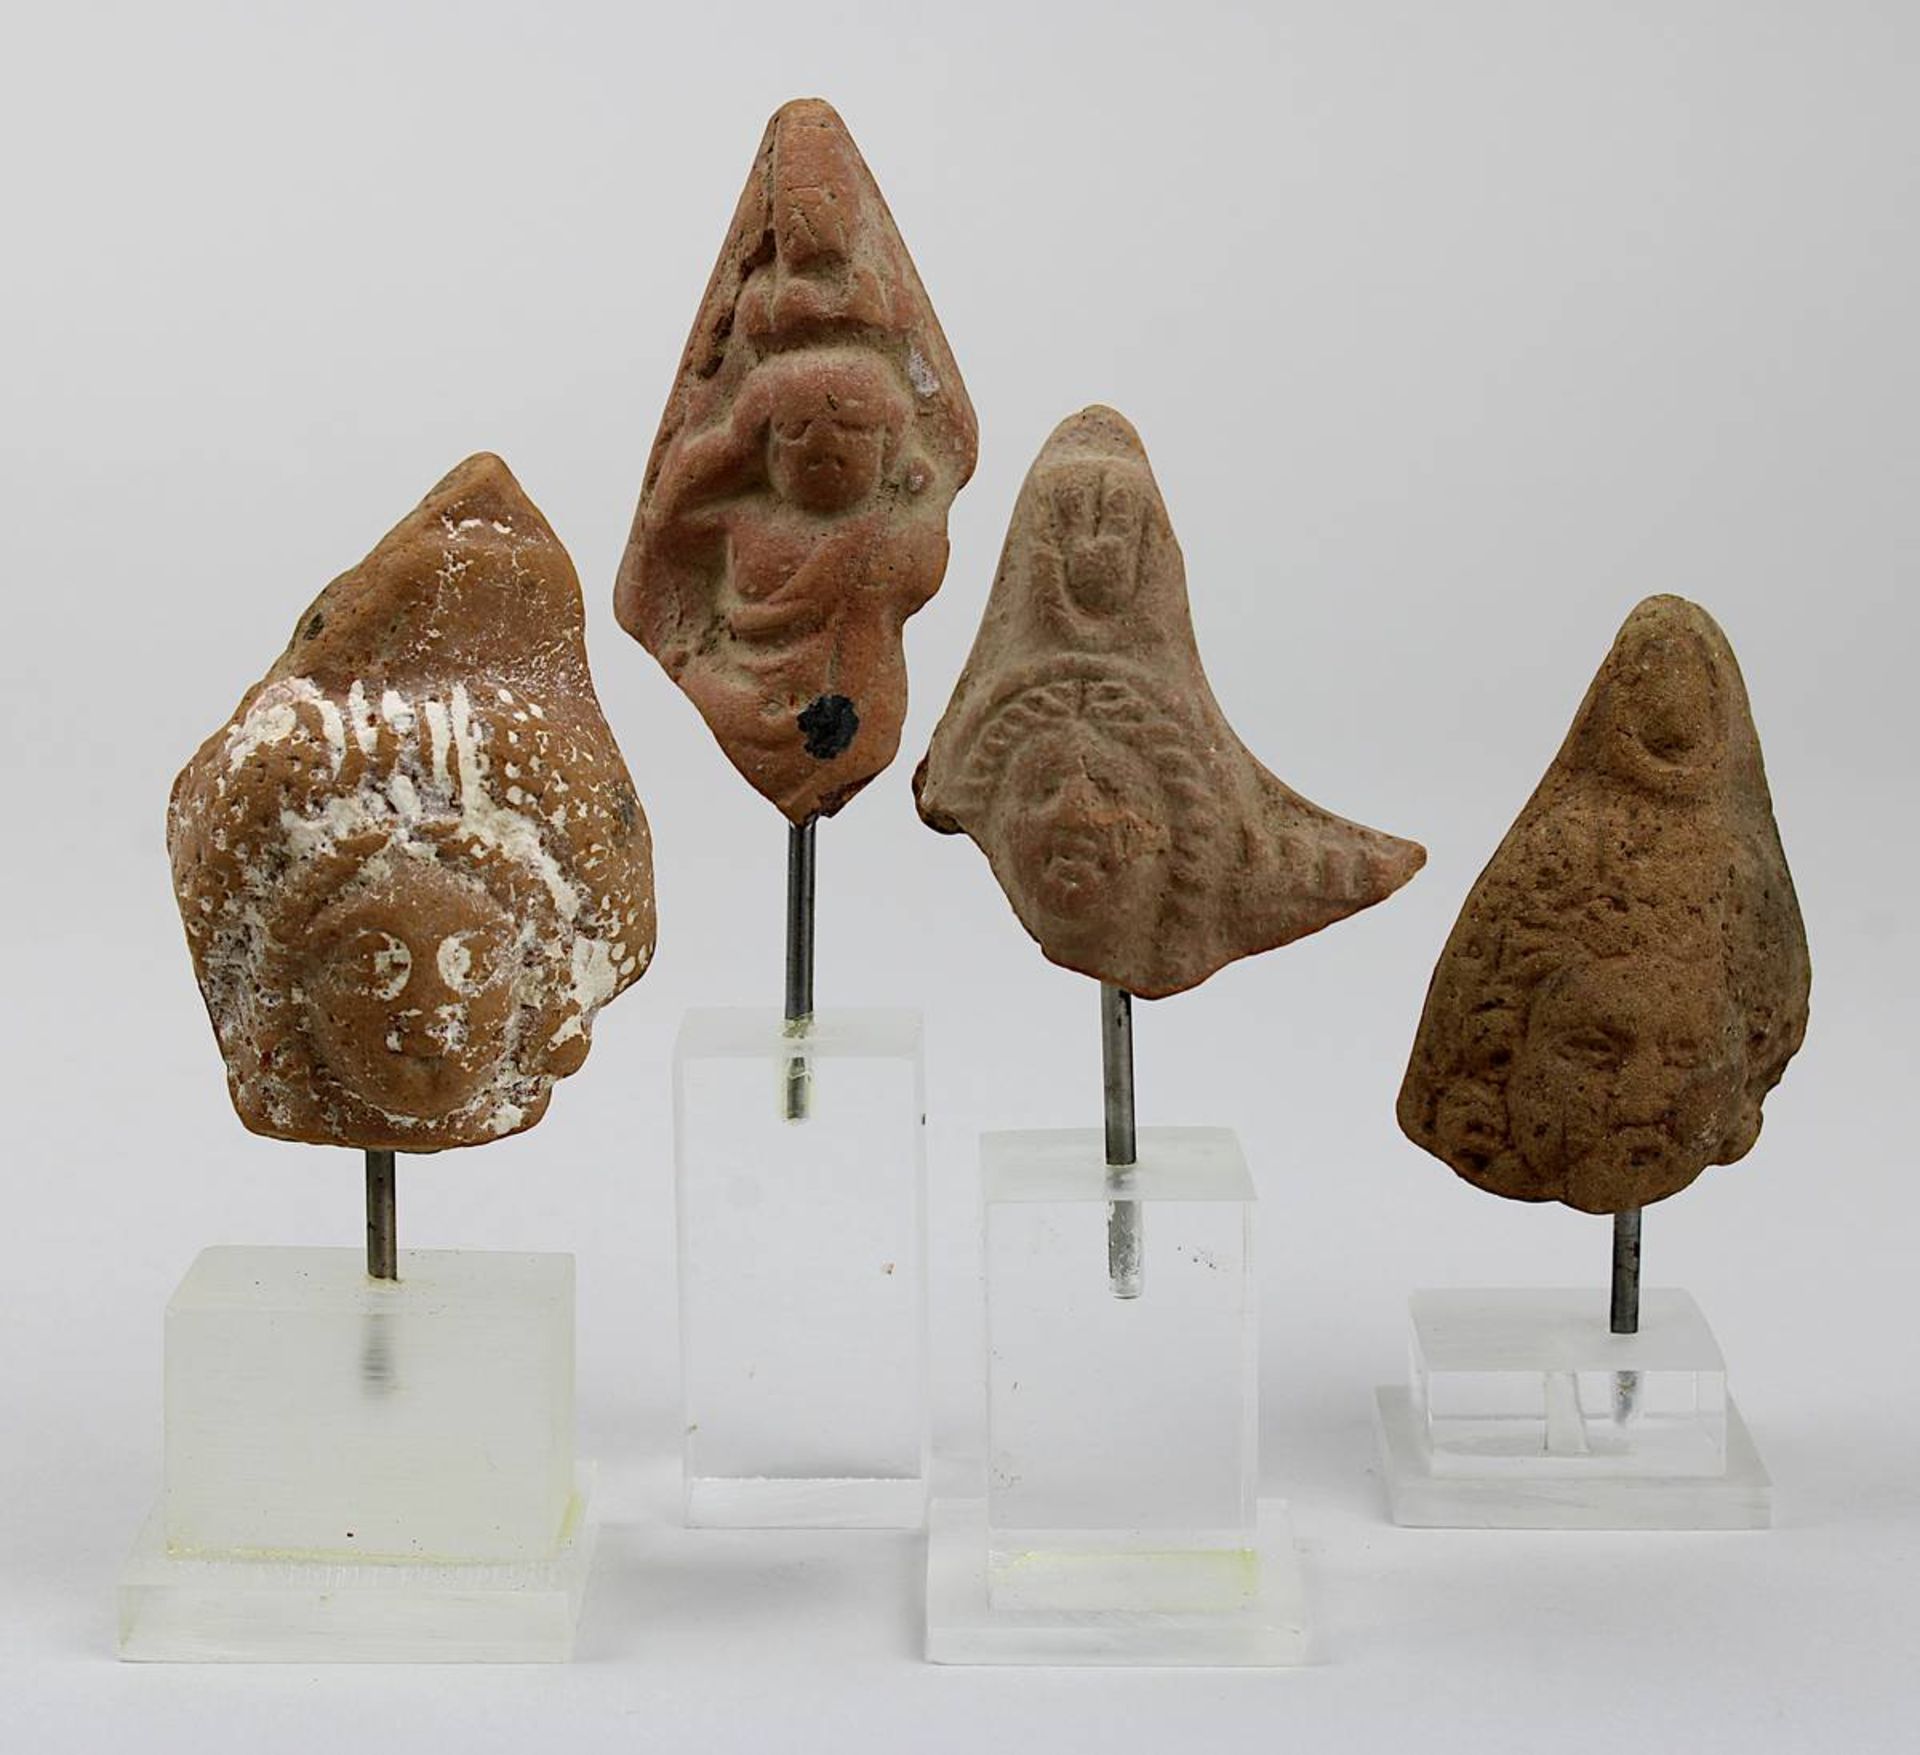 4 Kopf-Fragmente von Terracotta-Hohlfiguren, Ägypten, ptolemäisch / römisch, jew. aus 2 Teilen zusam